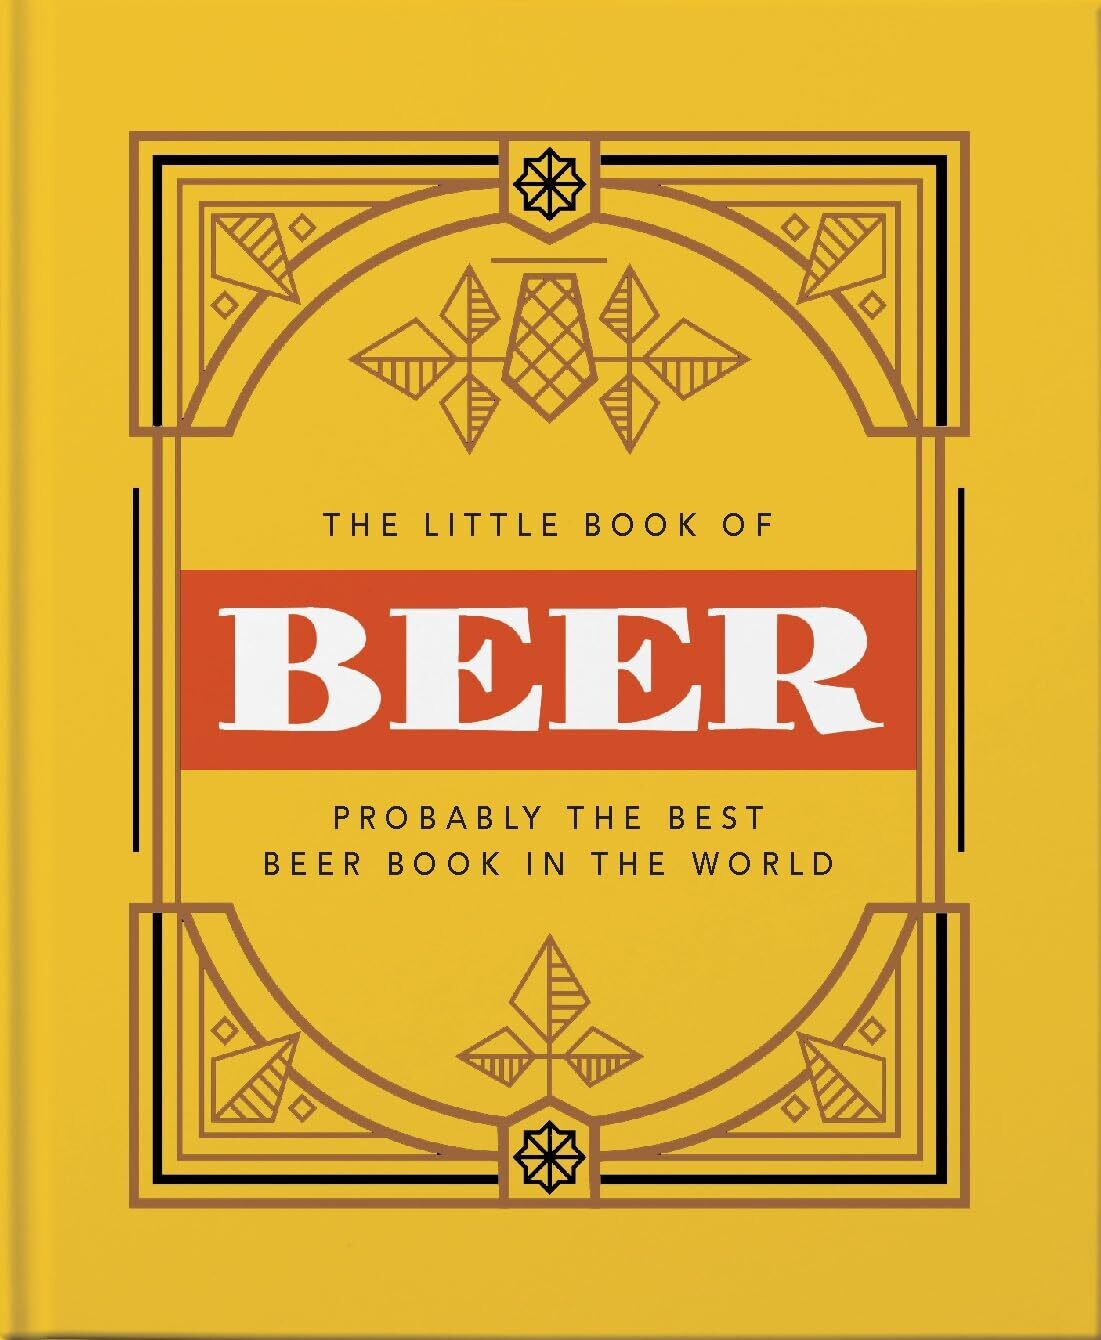 Book of Beer